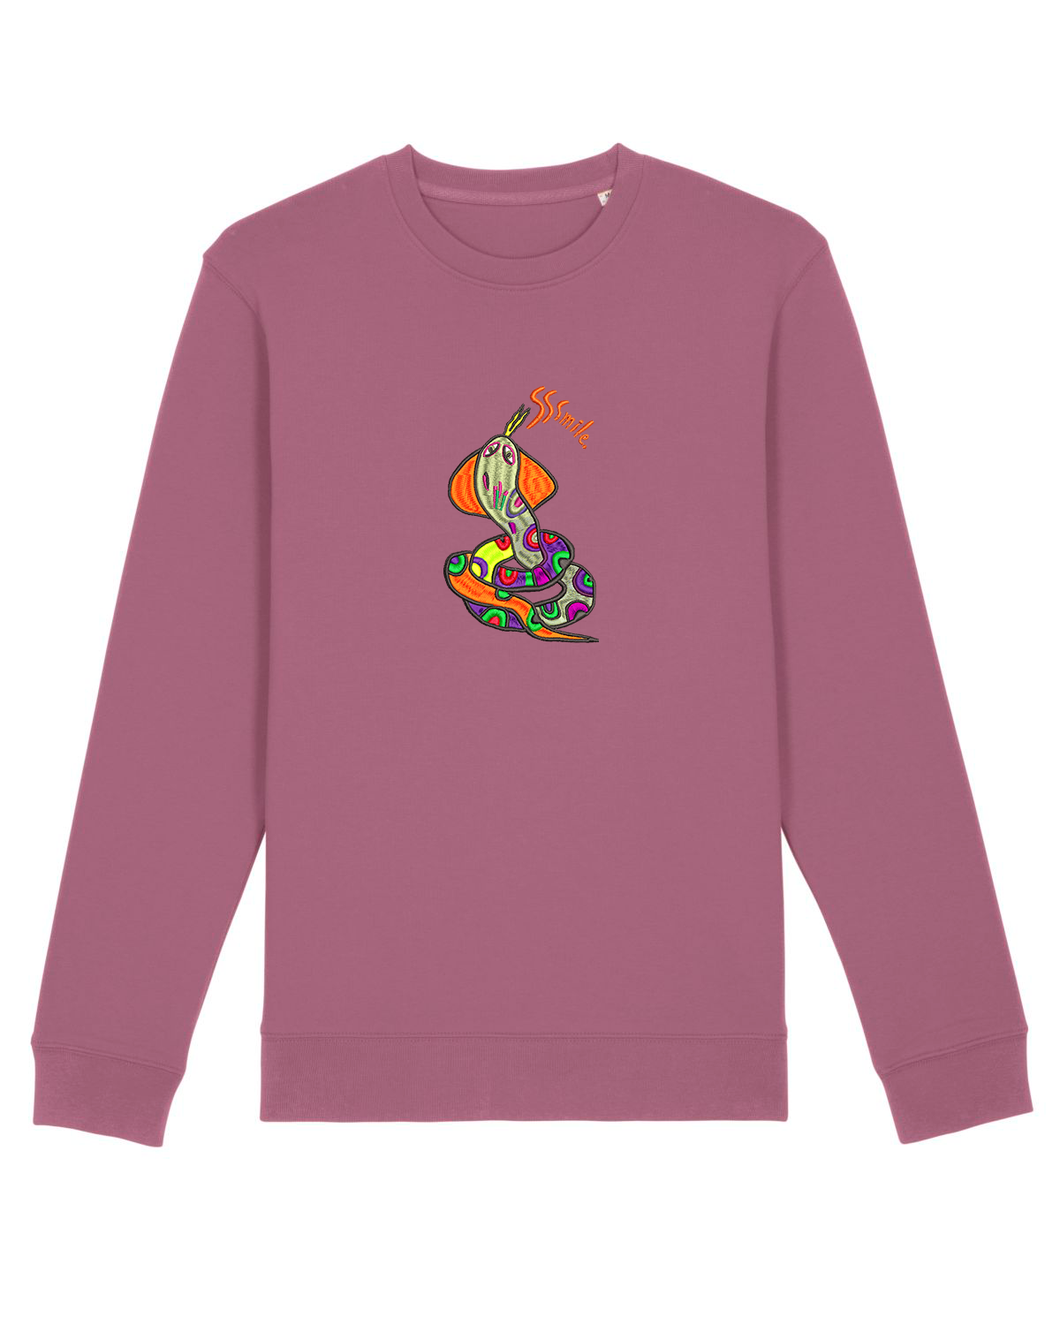 Sssmile 🐍 - Embroidered UNISEX Sweatshirt